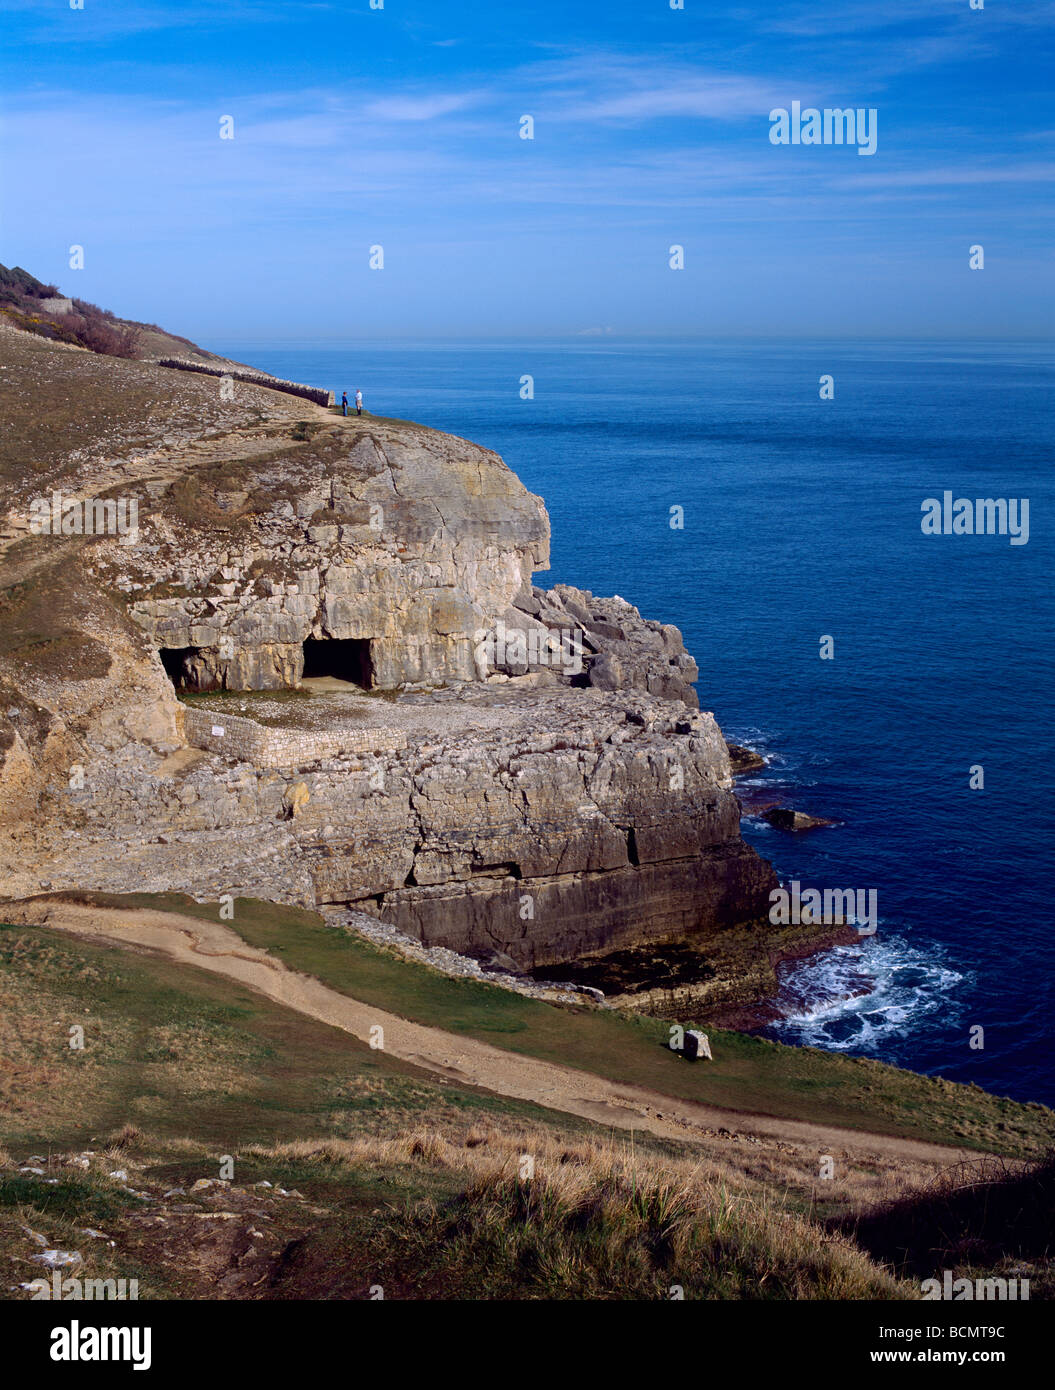 Grottes de Tilly Whim à Anvil point sur la côte jurassique du Dorset près de Swanage, Dorset, Angleterre Banque D'Images